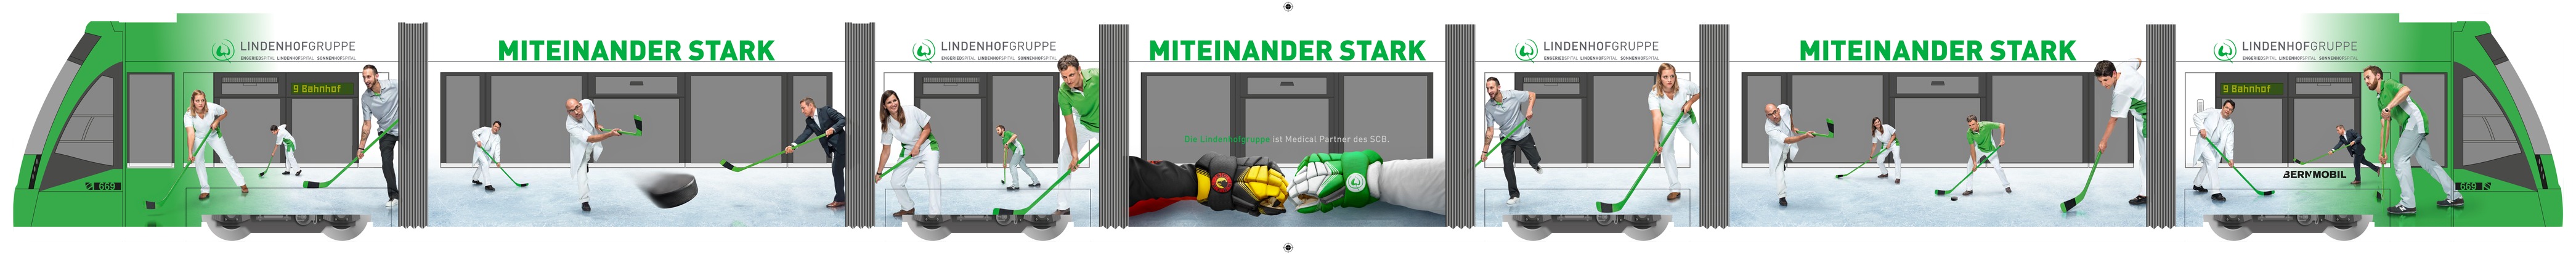 «Miteinander stark» - die Berner Lindenhofgruppe lanciert neue Kampagne